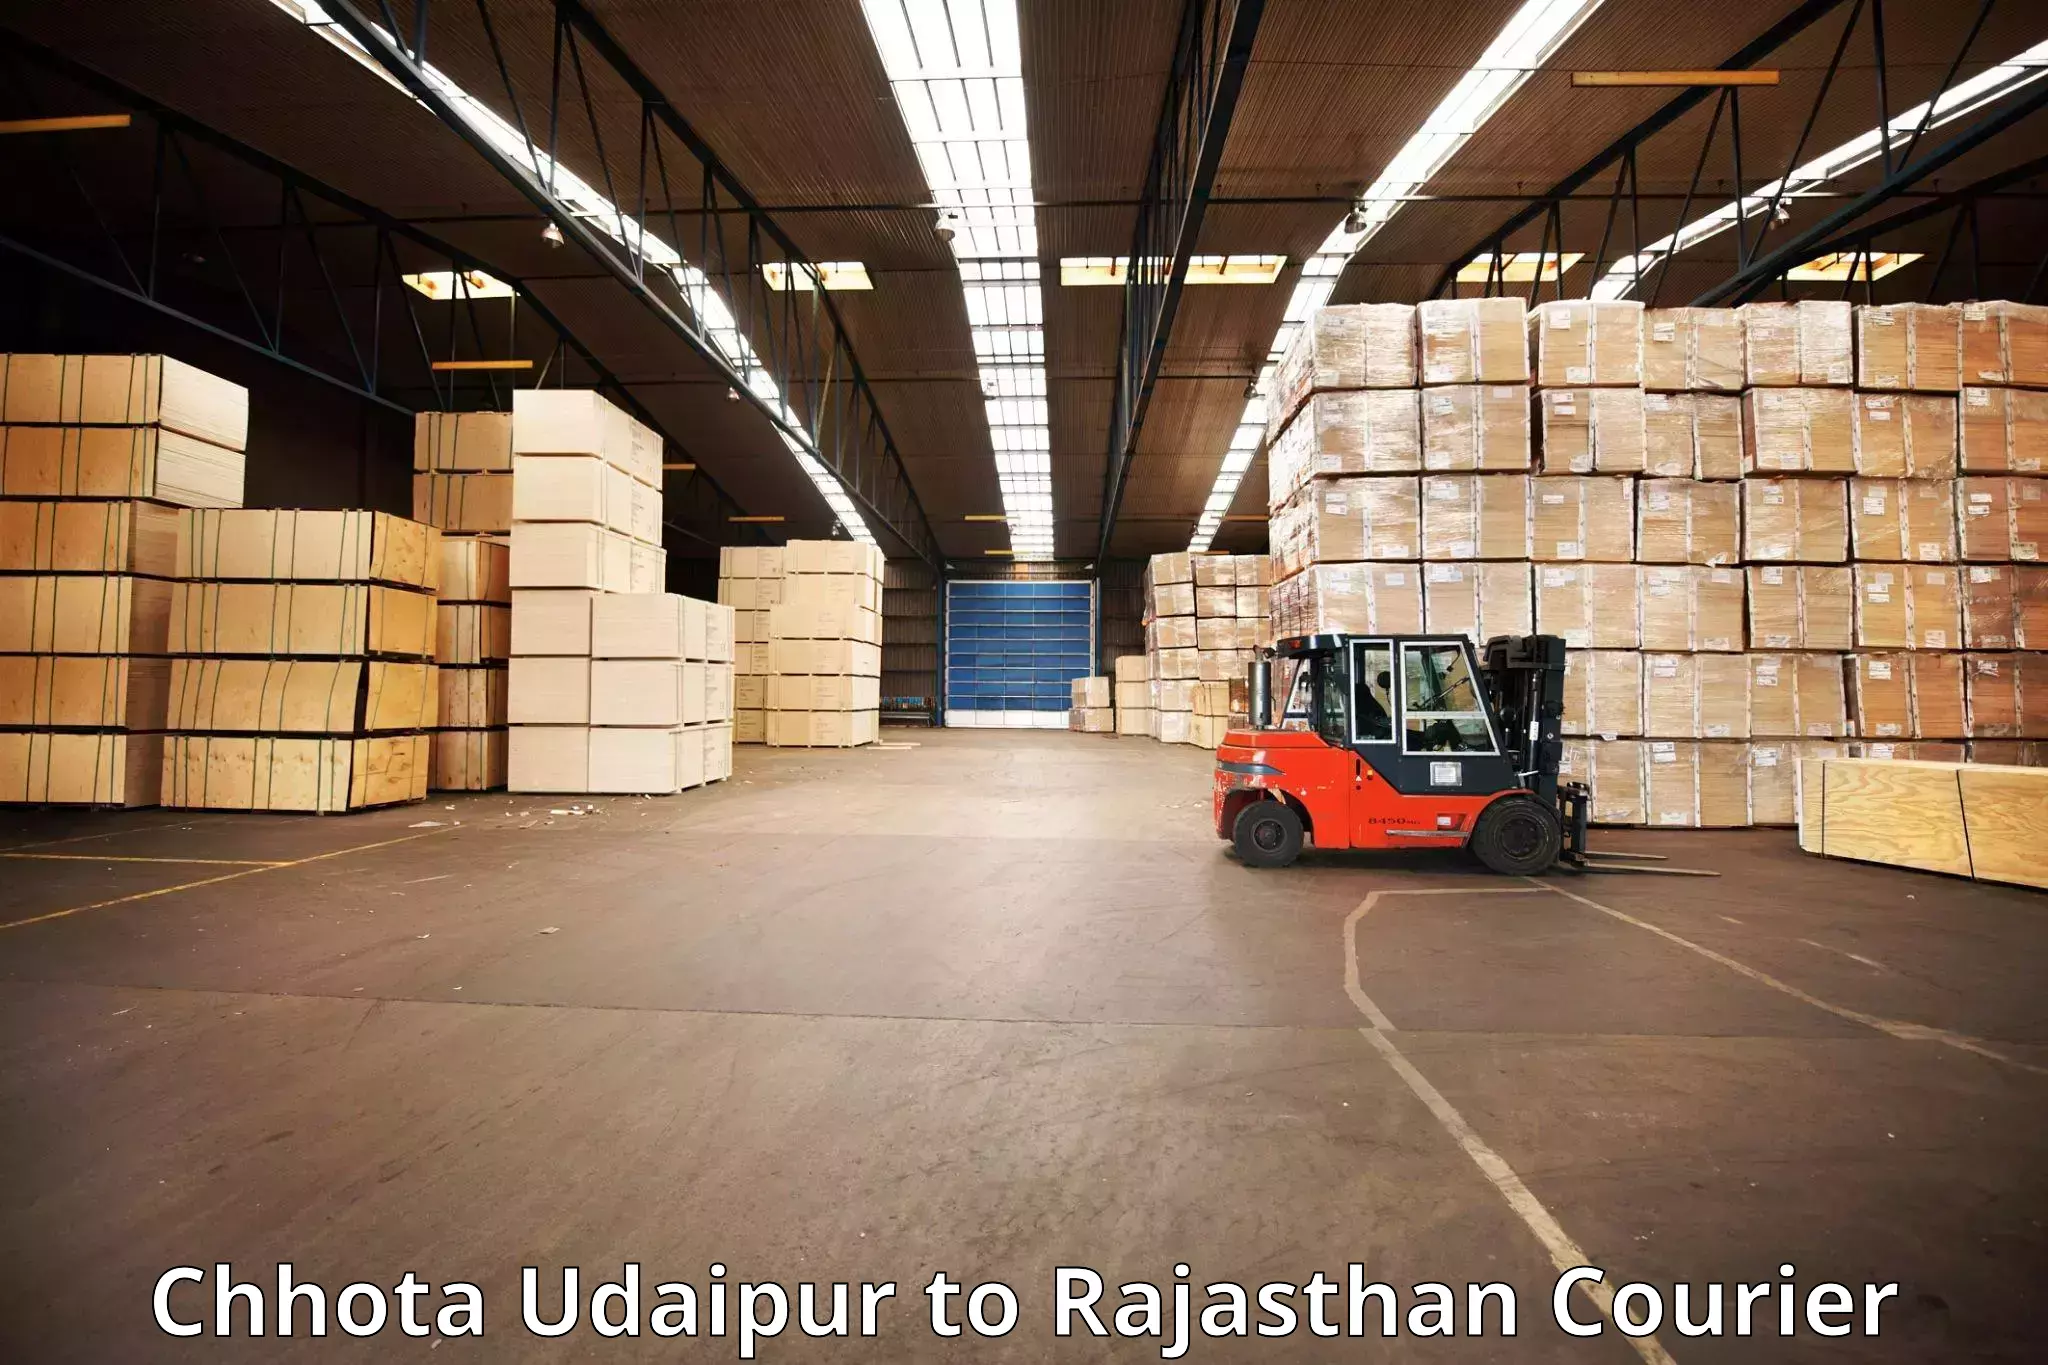 Baggage shipping experts Chhota Udaipur to Shahpura Jaipur